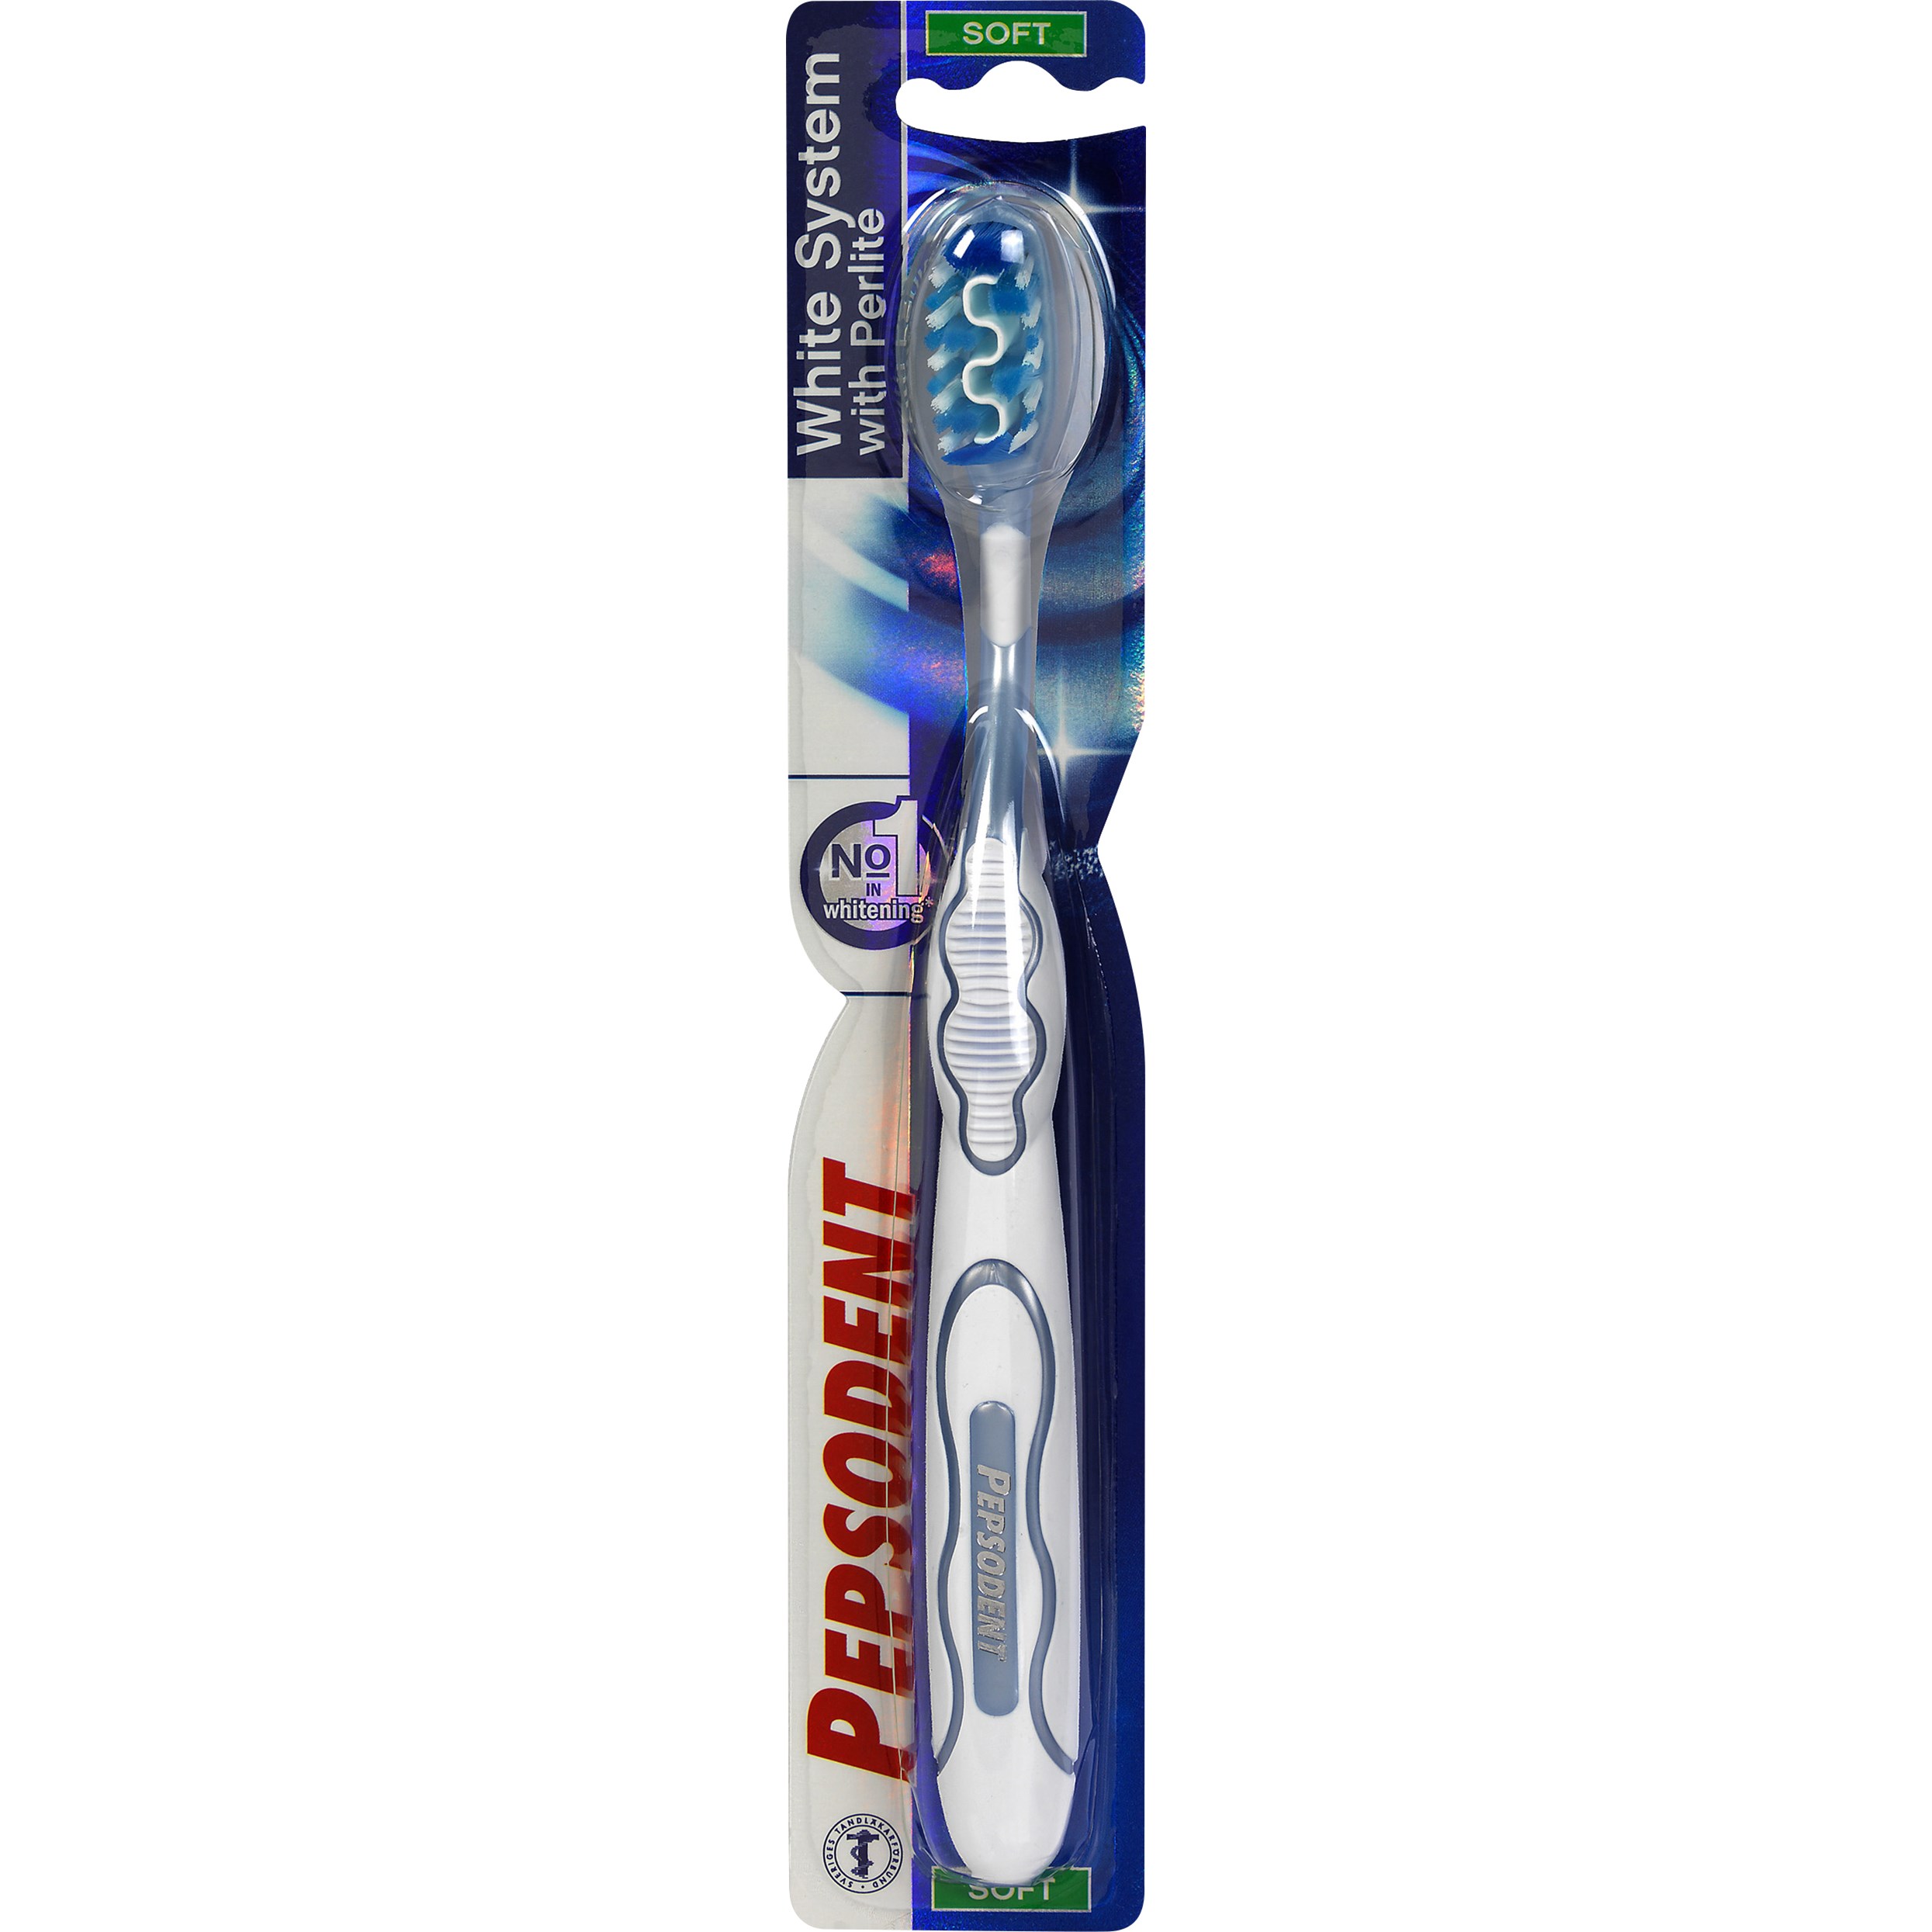 Bilde av Pepsodent White Systems Toothbrush Soft